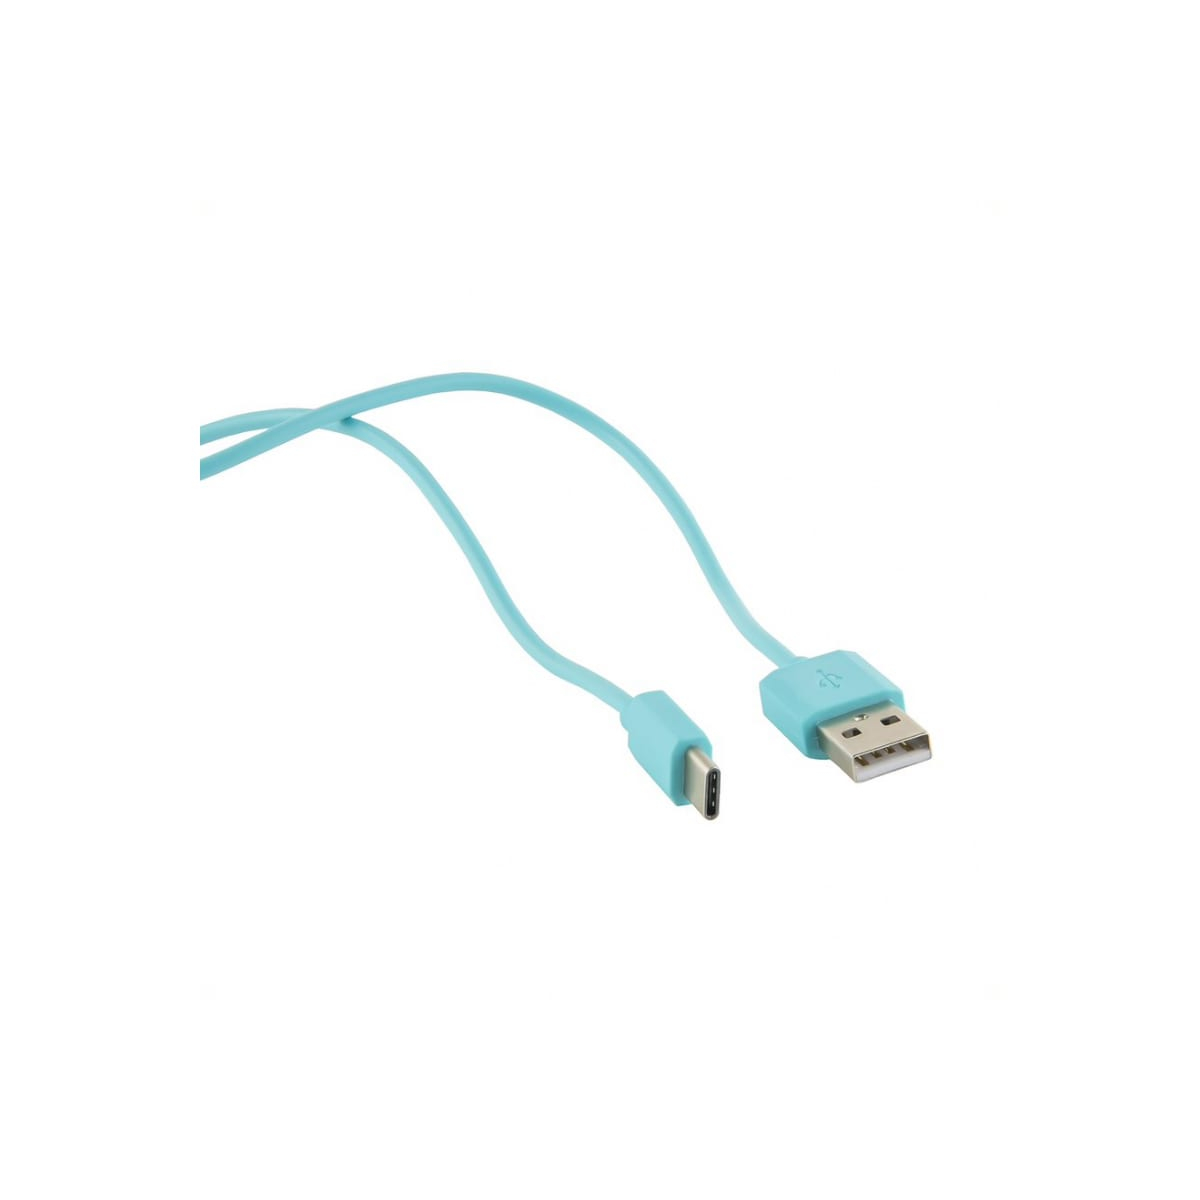 Дата-кабель Red Line USB - Type-C, 3А, нейлон, 1м, синий дата кабель red line type c type c 1метр 2а белый